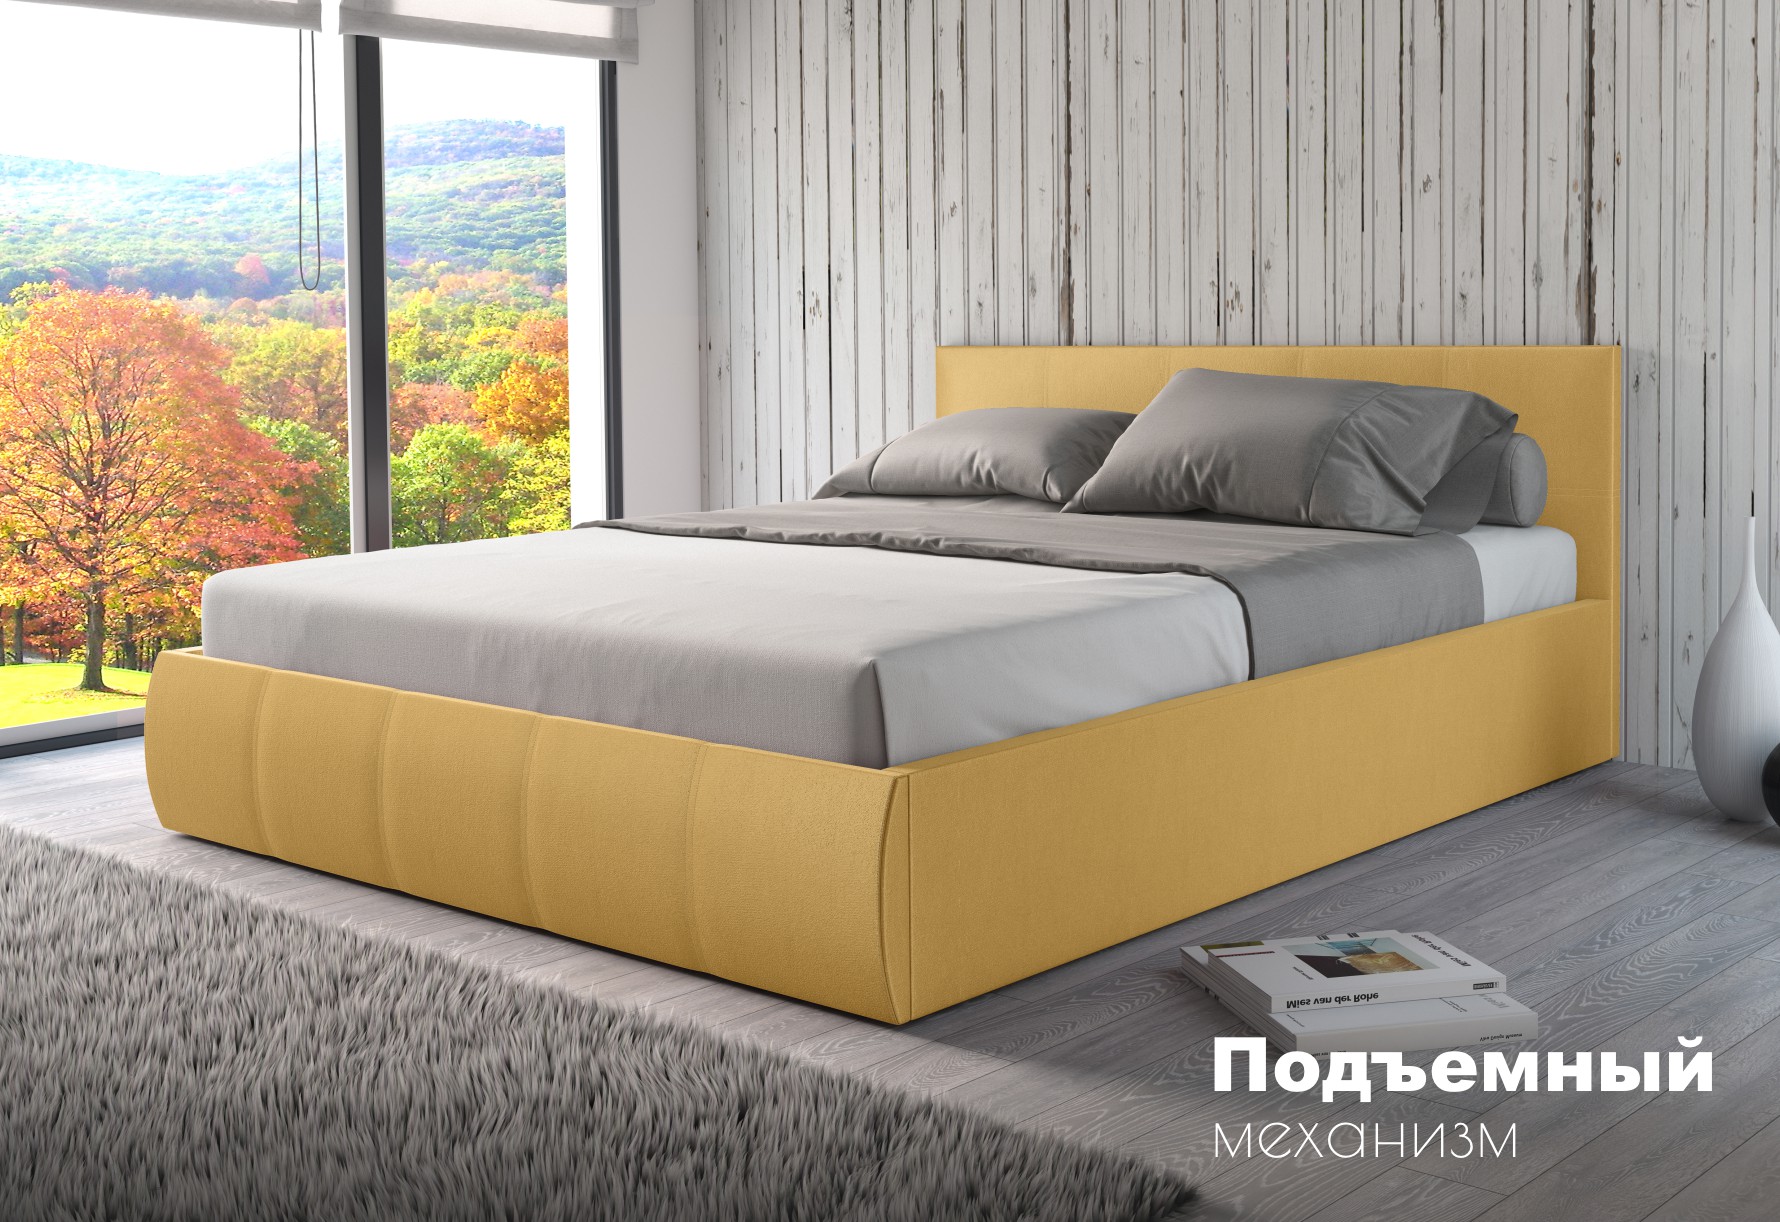 Мягкая кровать Верона 160, цвет bingo mustard (подъемник) - фото 1